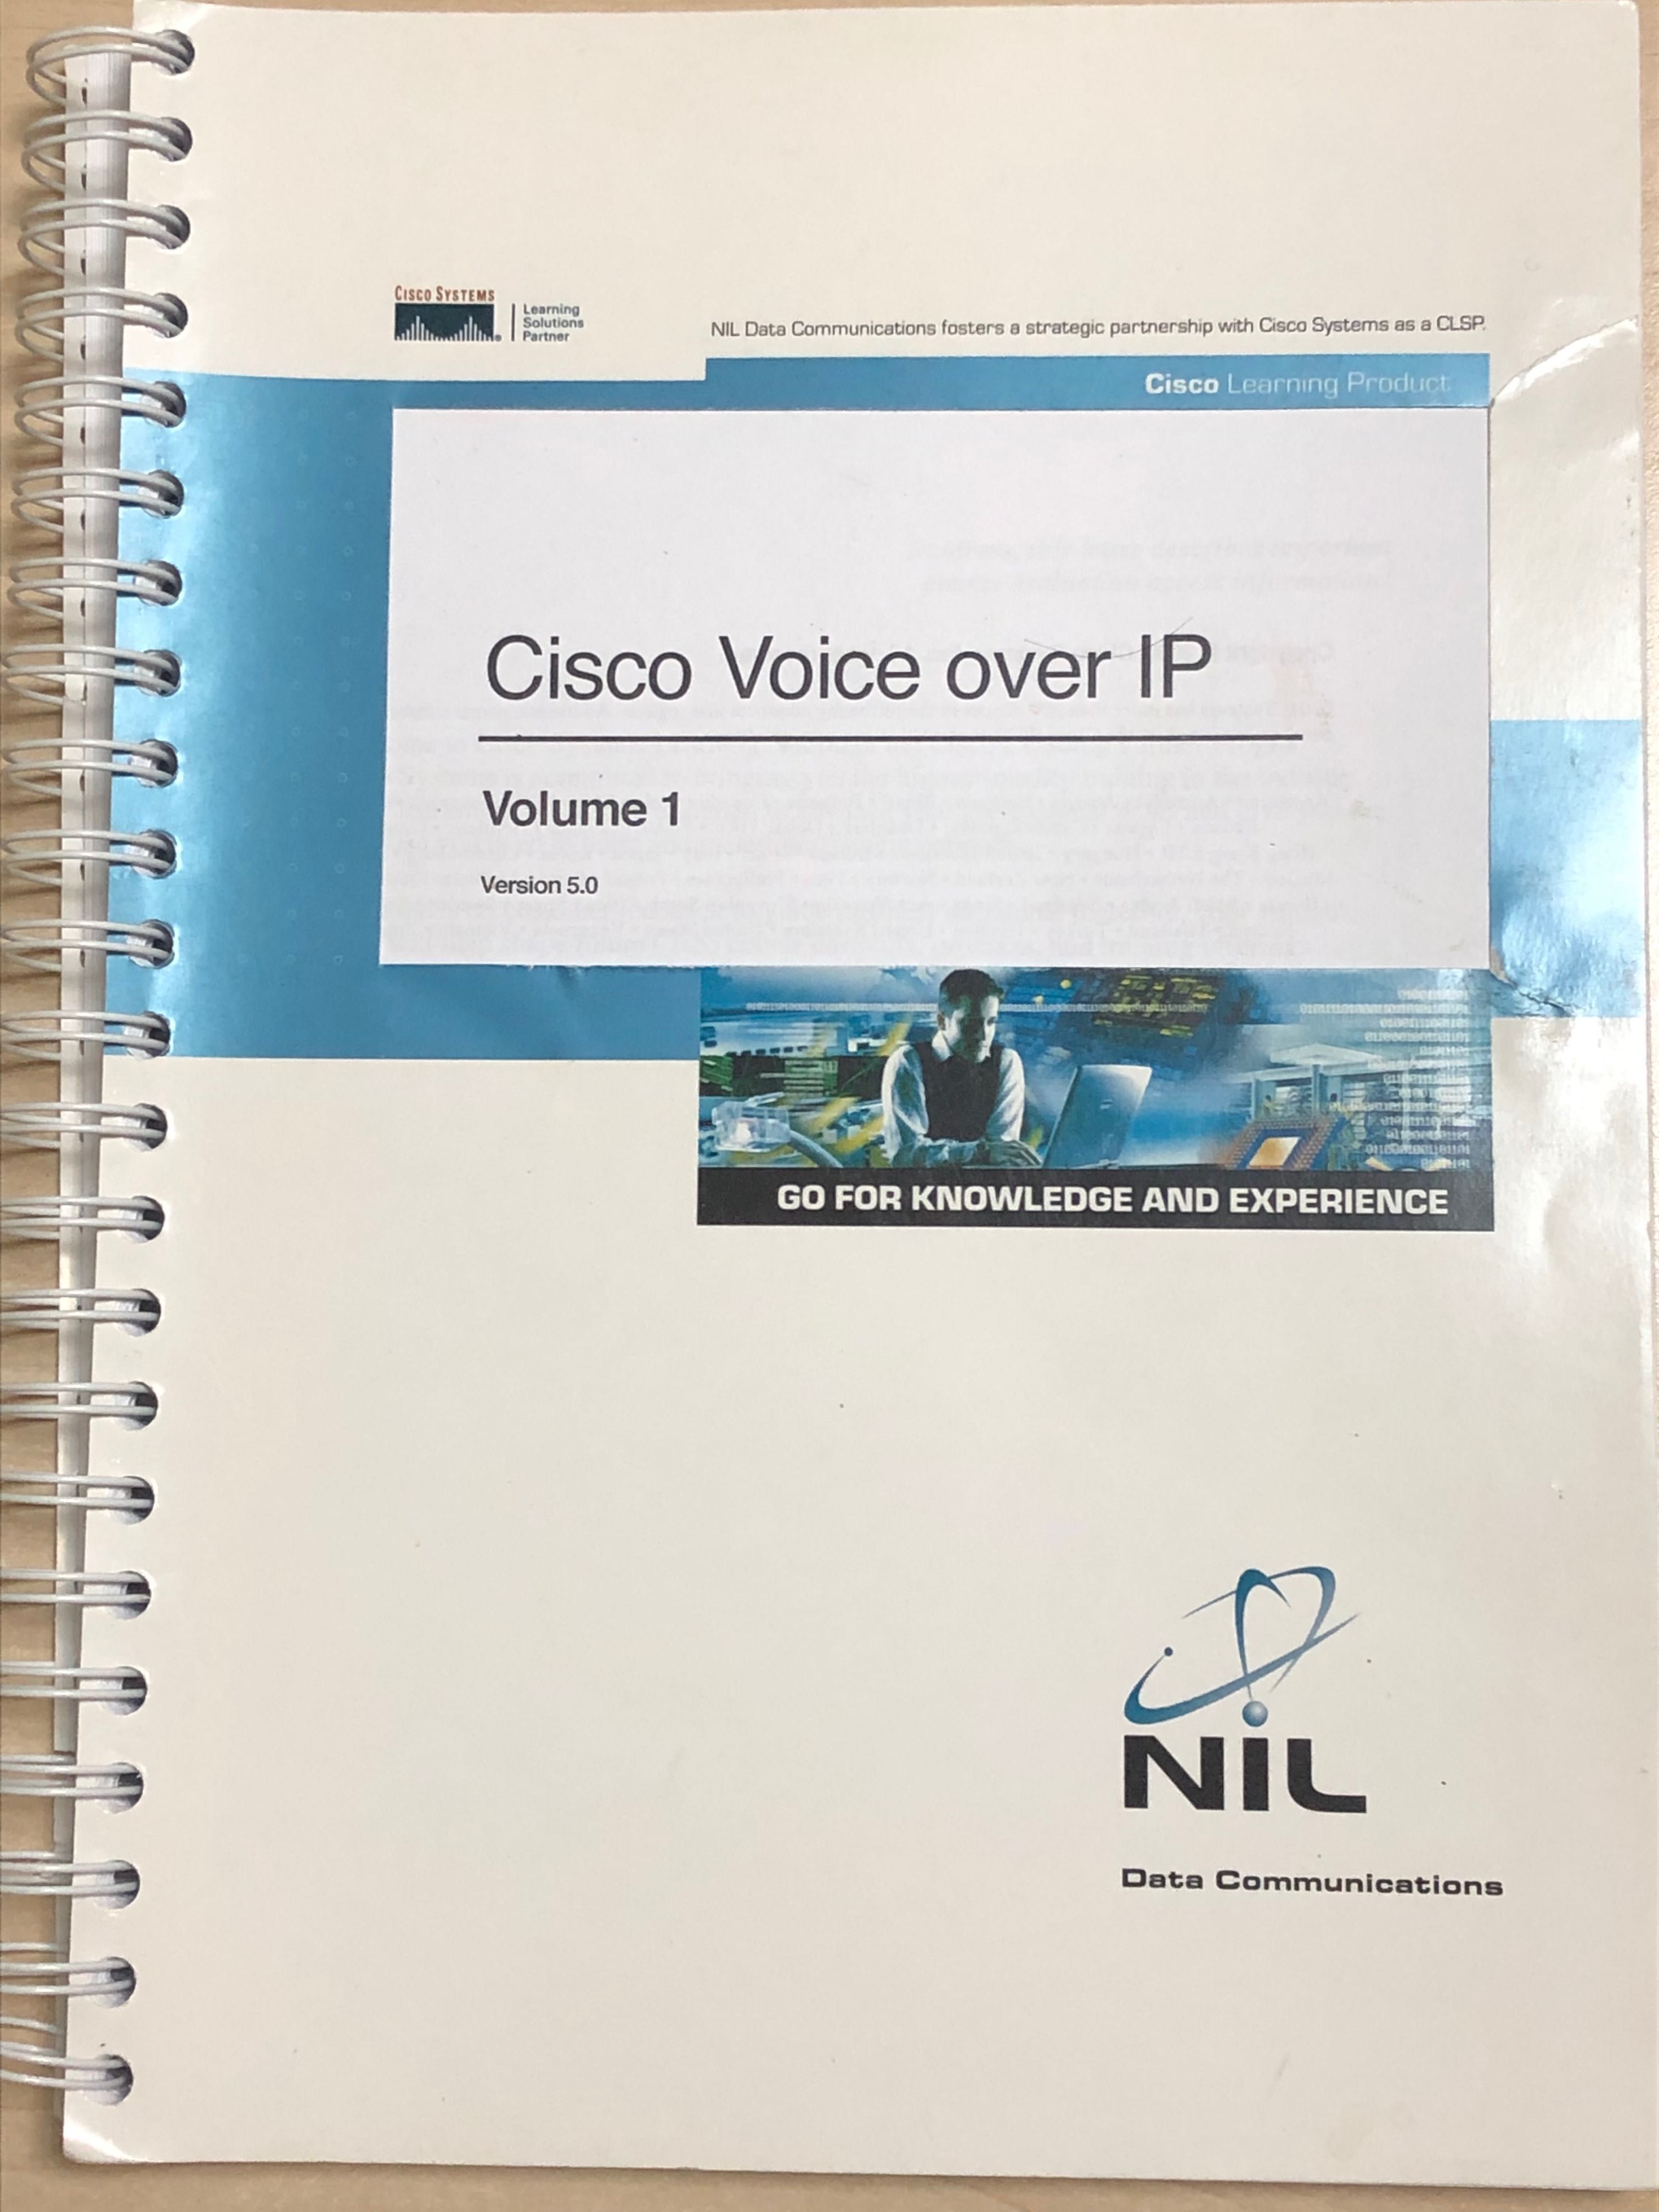 материалы учебного курса Cisco Voice over IP ,   3 тома